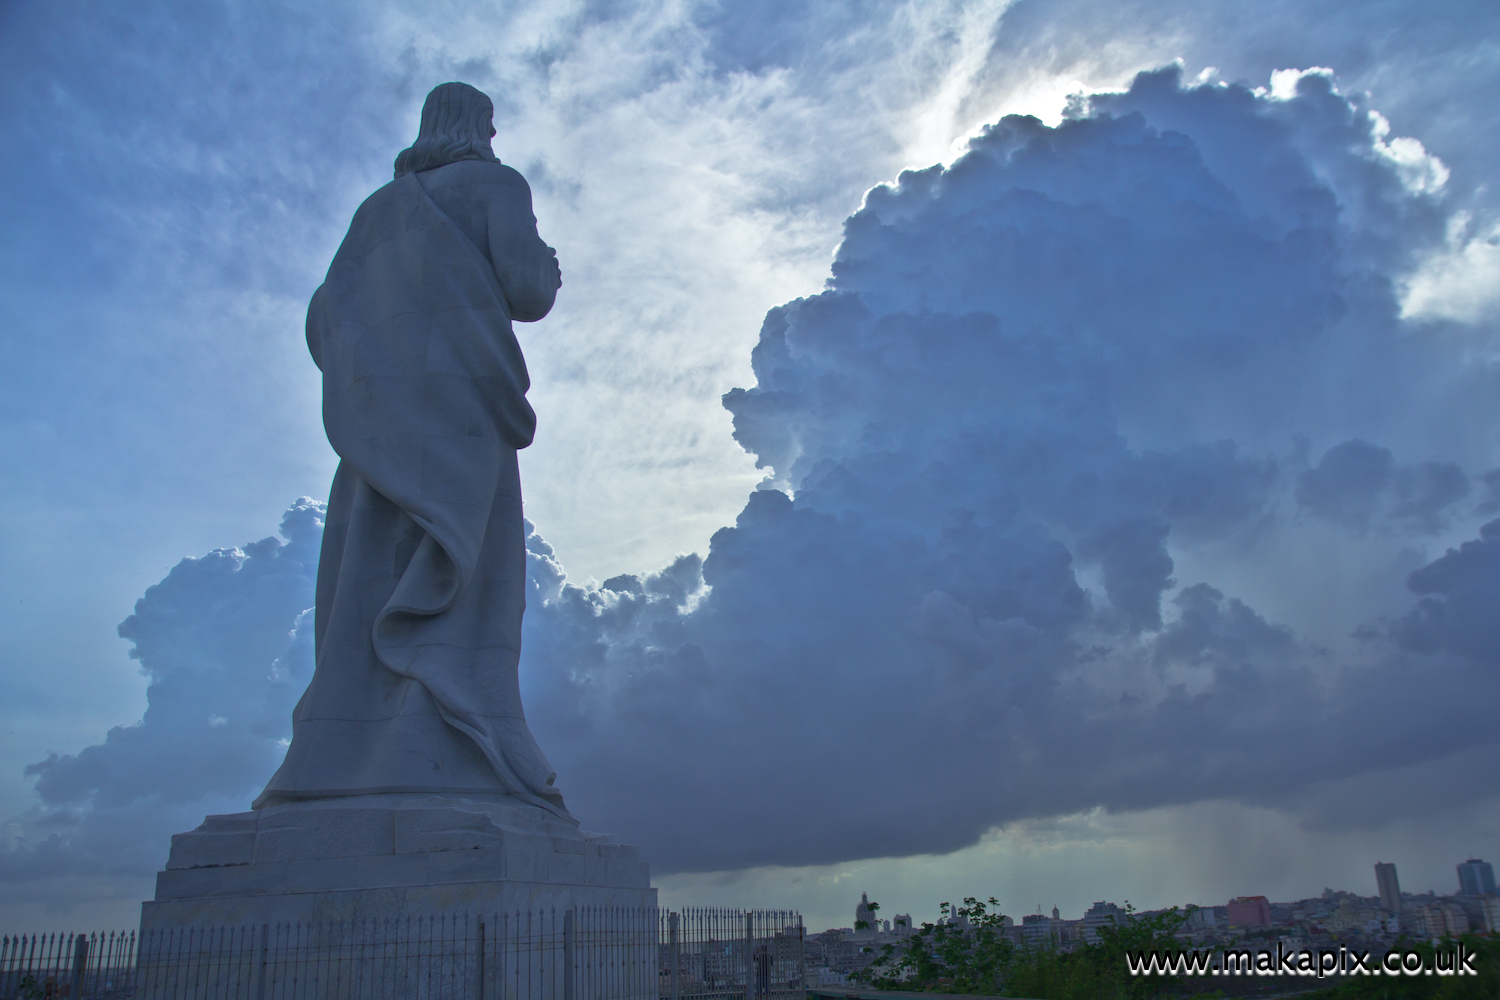 Cristo de La Habana, Havana, Cuba